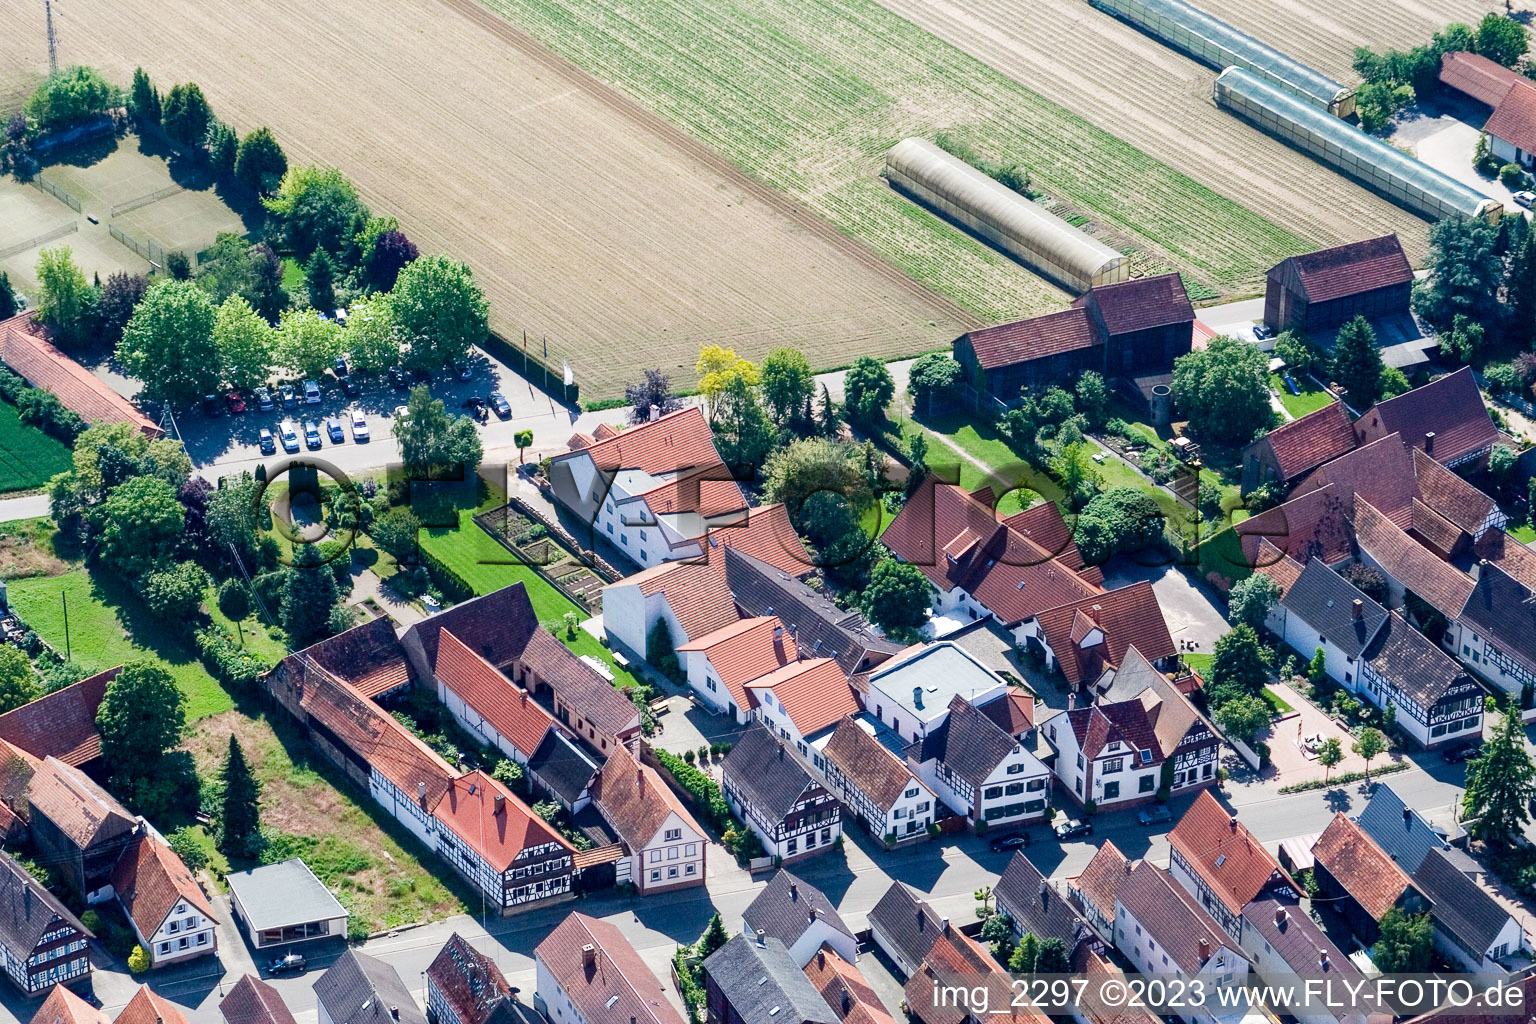 Luftbild von Hotel zur Krone im Ortsteil Hayna in Herxheim bei Landau/Pfalz im Bundesland Rheinland-Pfalz, Deutschland